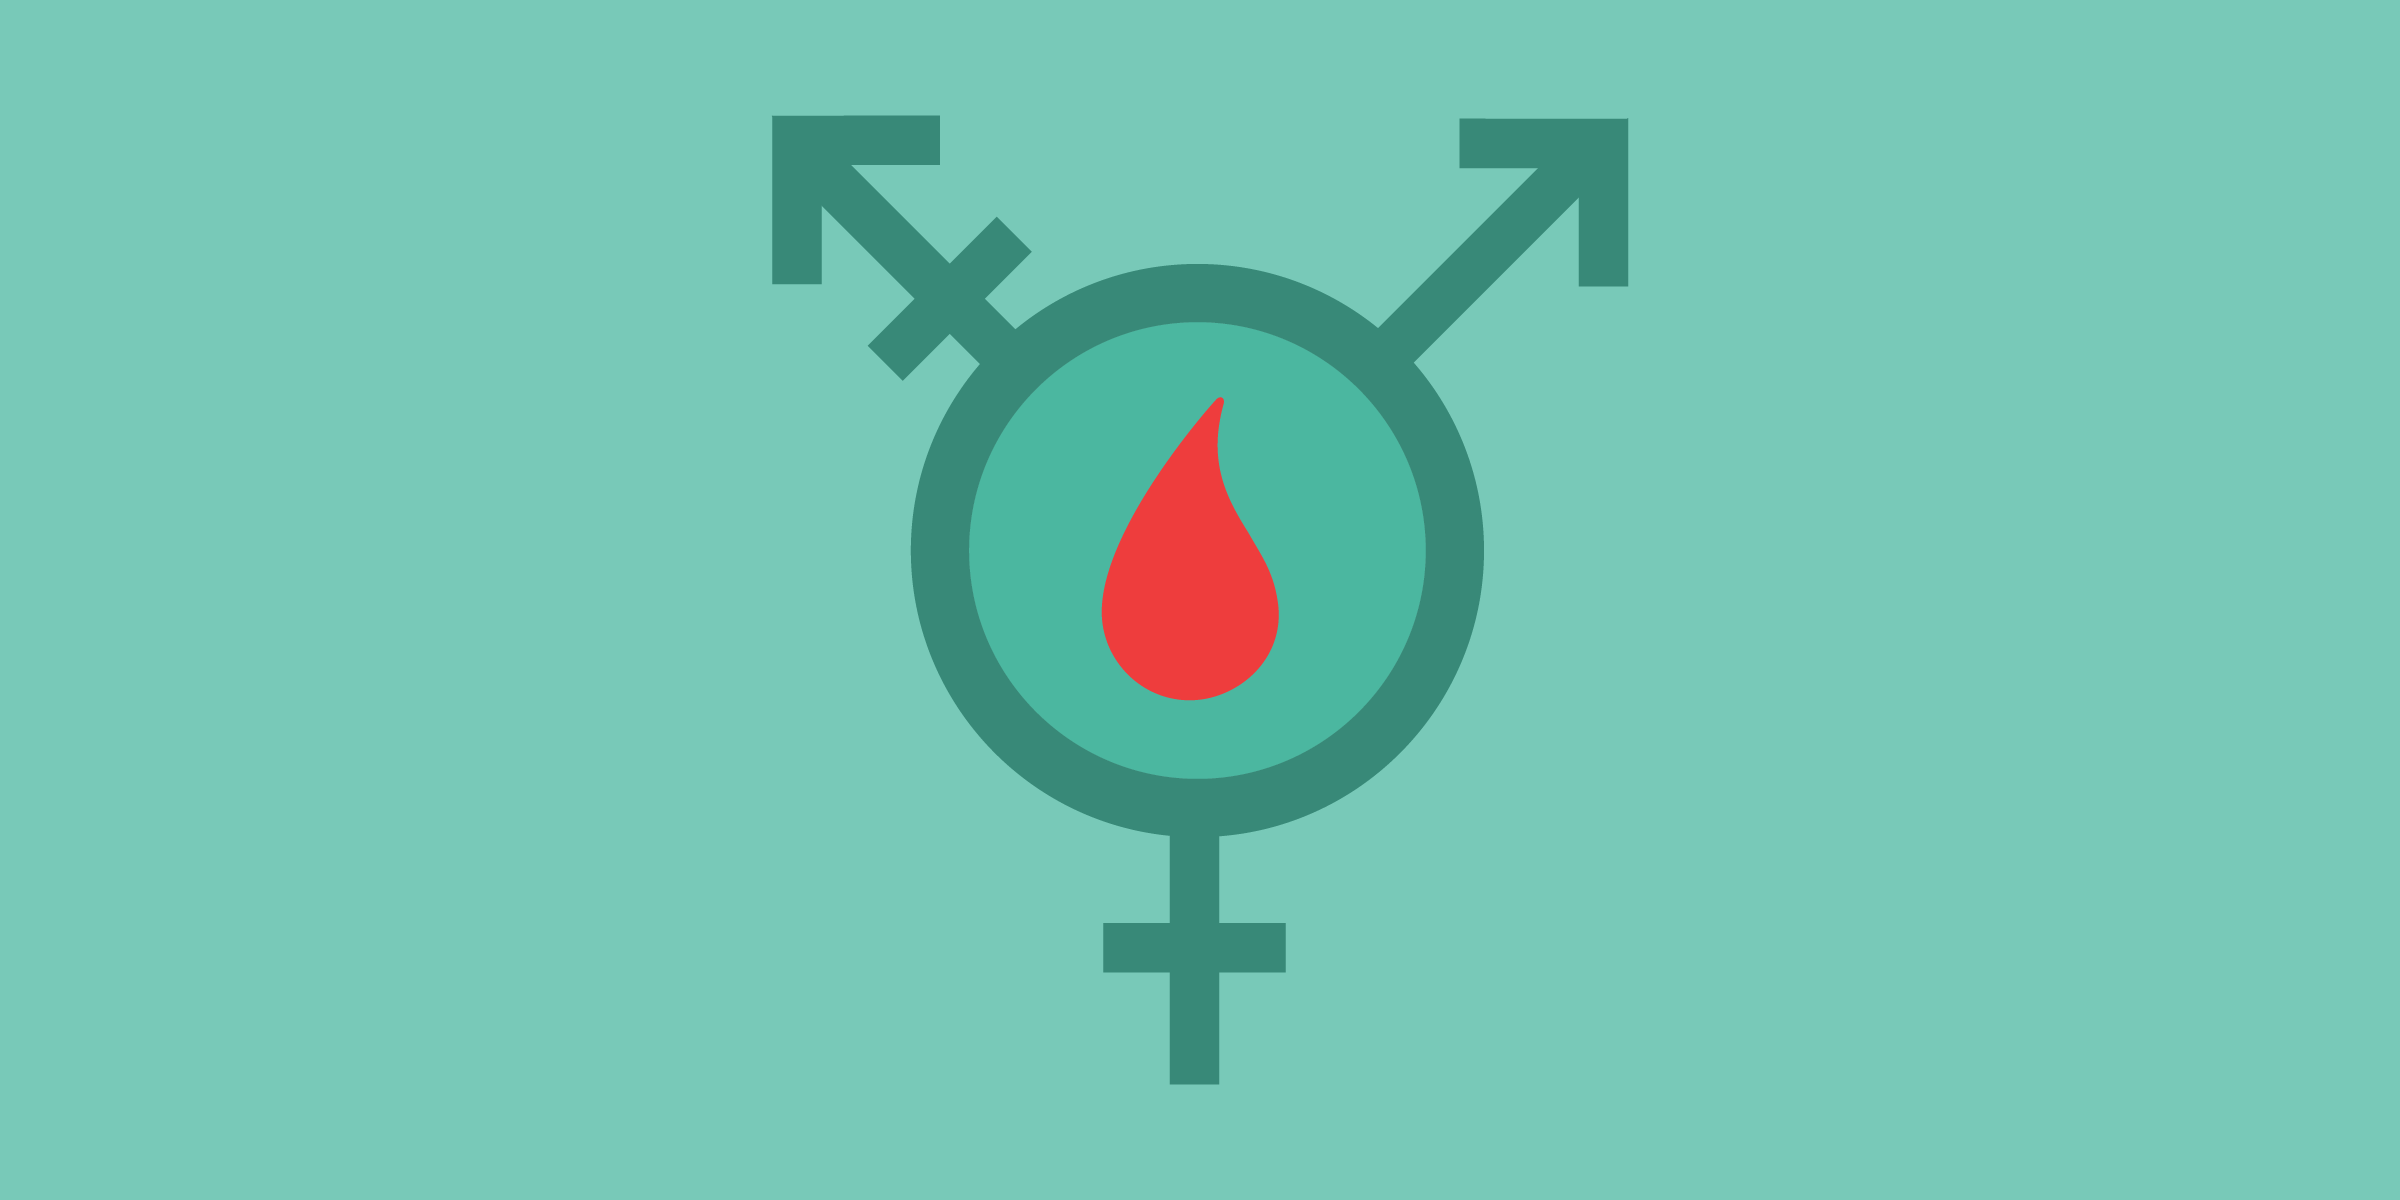 el símbolo transgénero en verde azulado con una gota de sangre roja en el medio del círculo